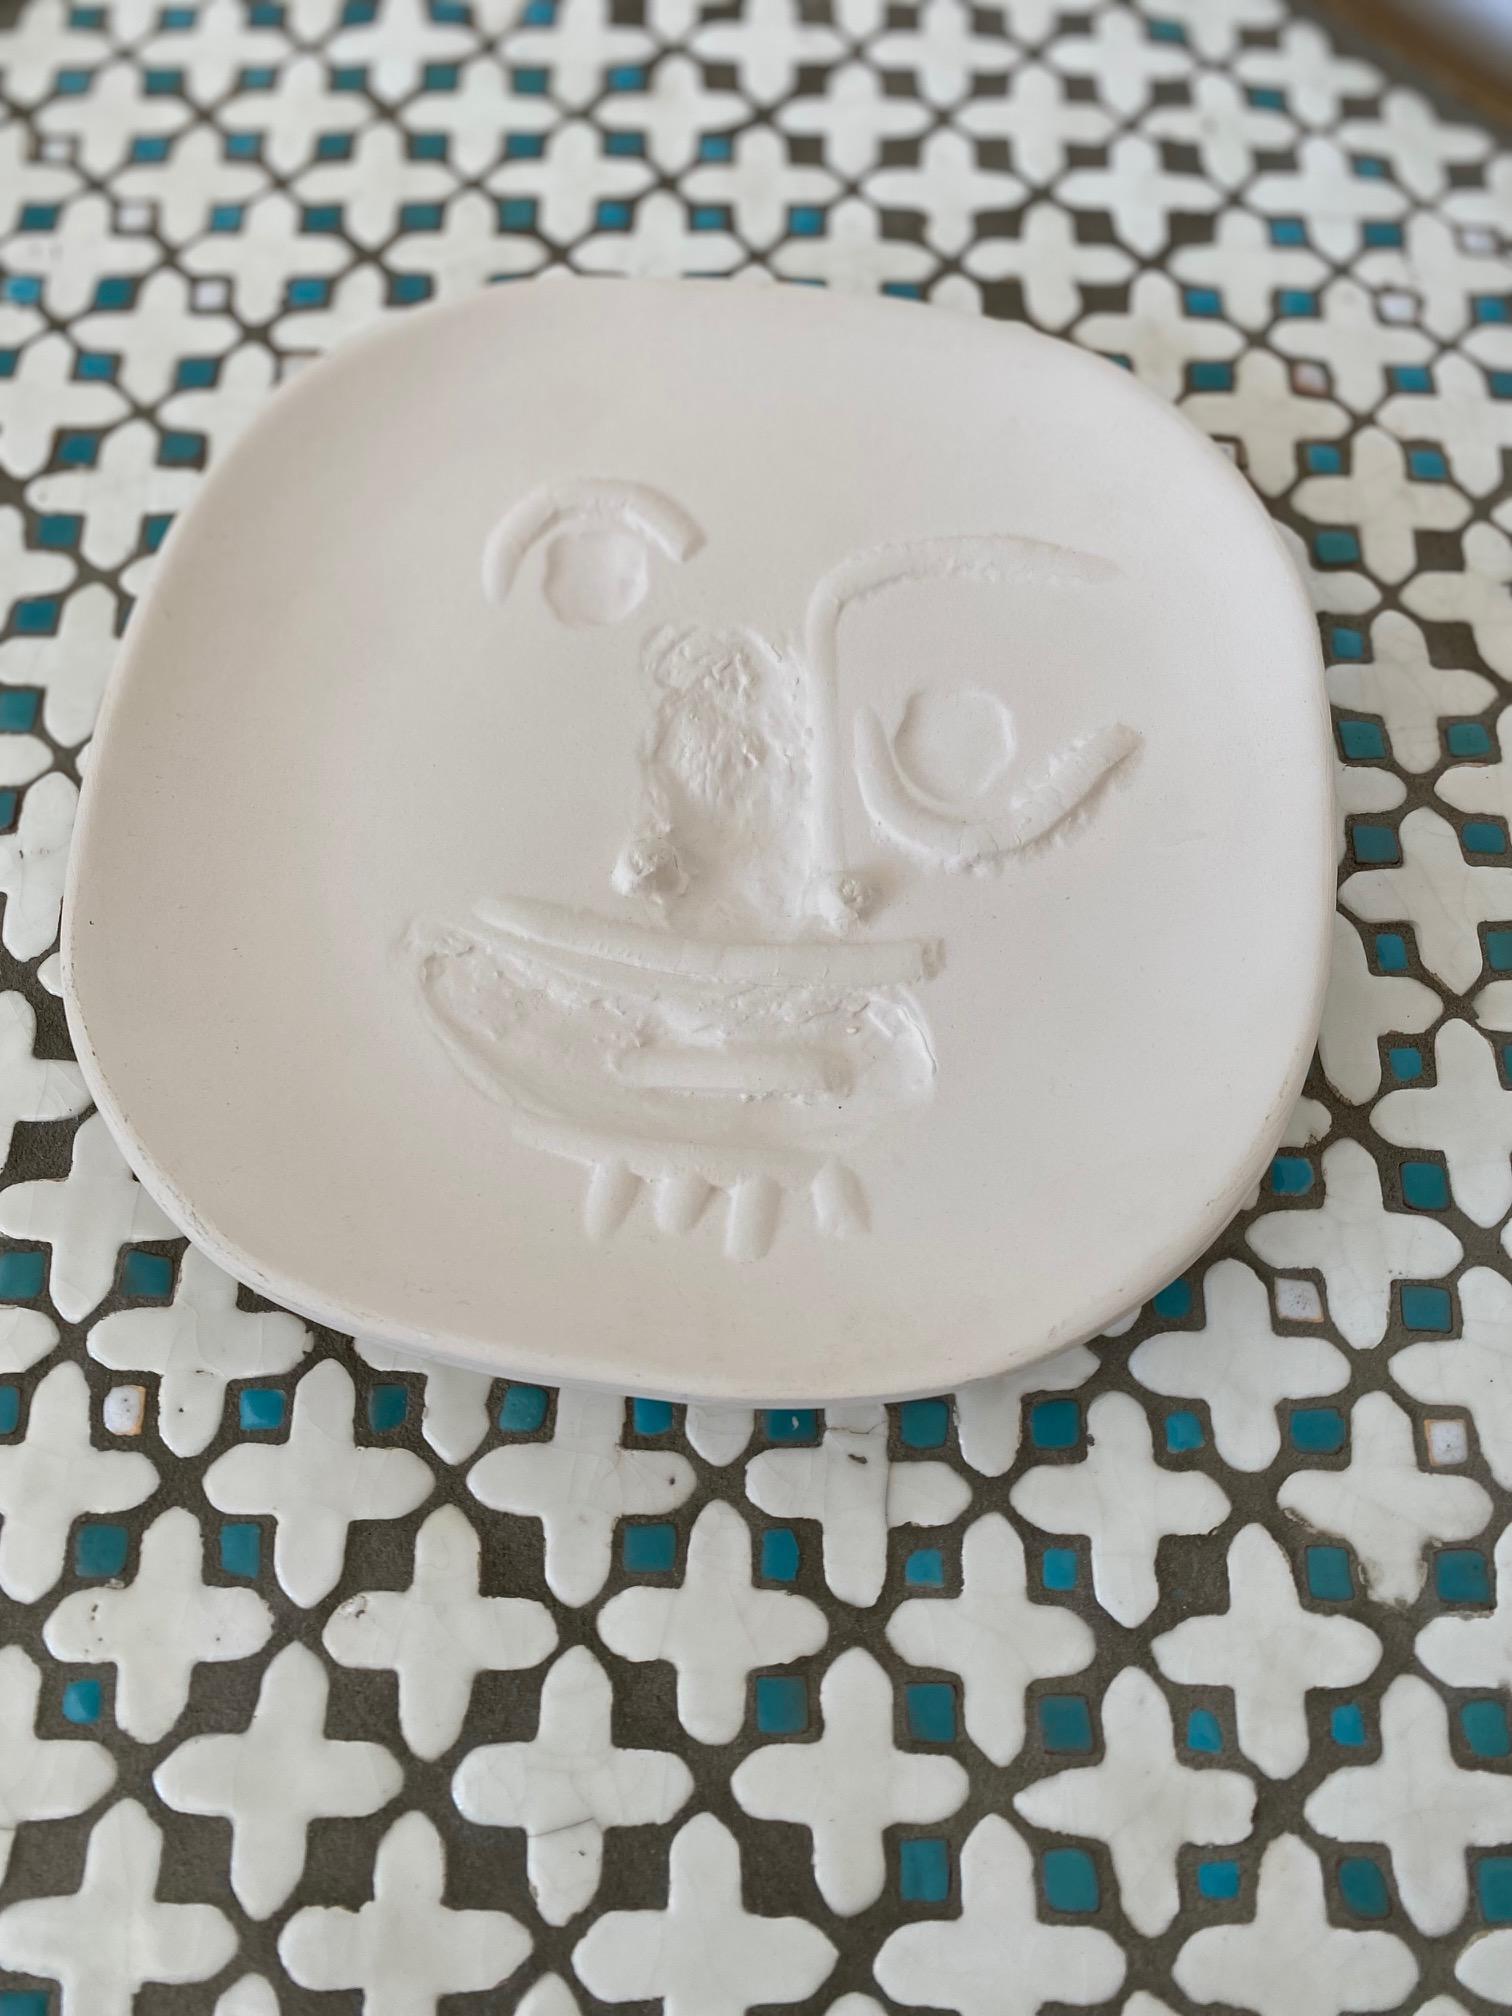 French Picasso Original Ceramic Plate Edition Madoura 